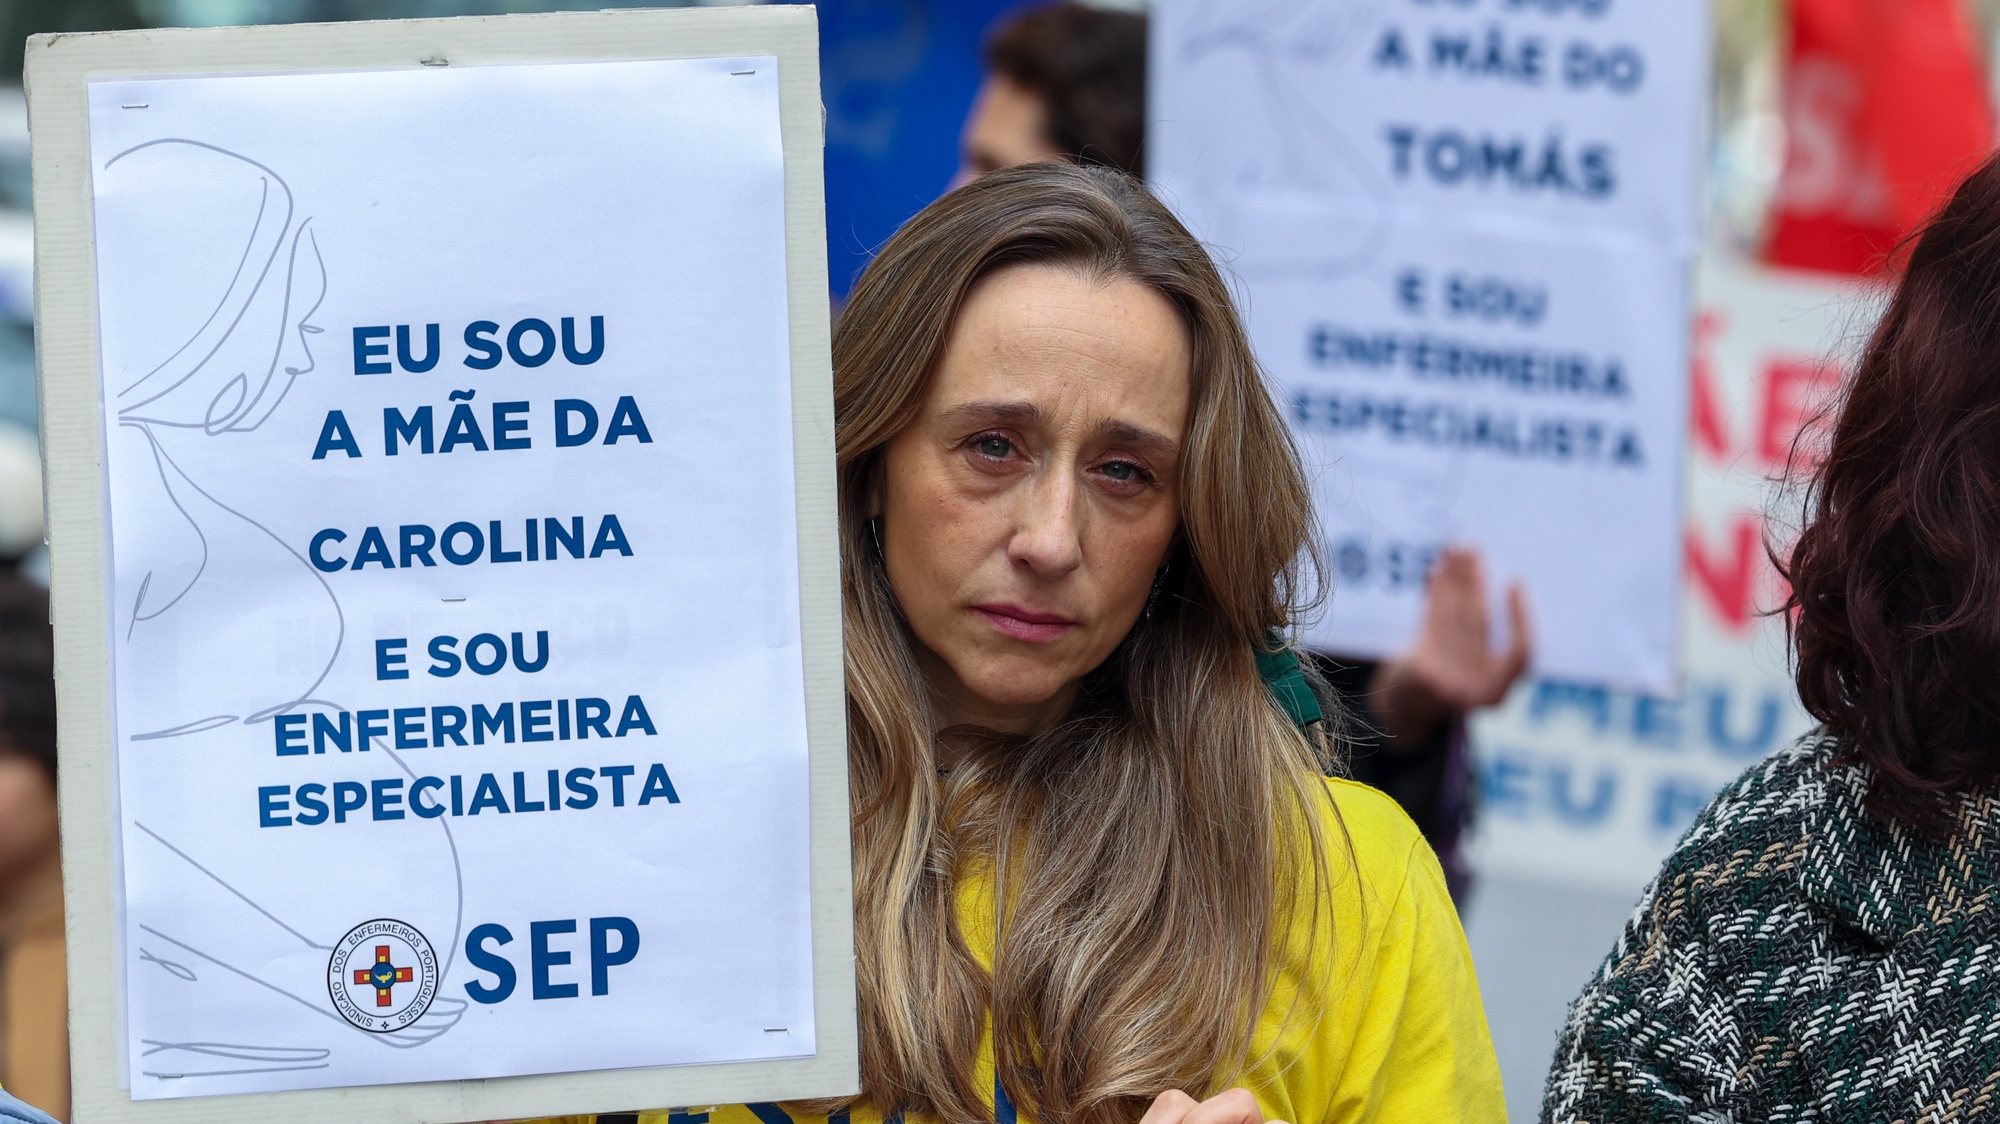 Enfermeiras afetas ao Sindicato dos Enfermeiros Portugueses (SEP) em protesto por atos discriminatórios nas suas remunerações manifestam-se no Dia Internacional da Mulher junto ao Ministério da Saúde, Lisboa, 8 de março de 2024.  MANUEL DE ALMEIDA/LUSA